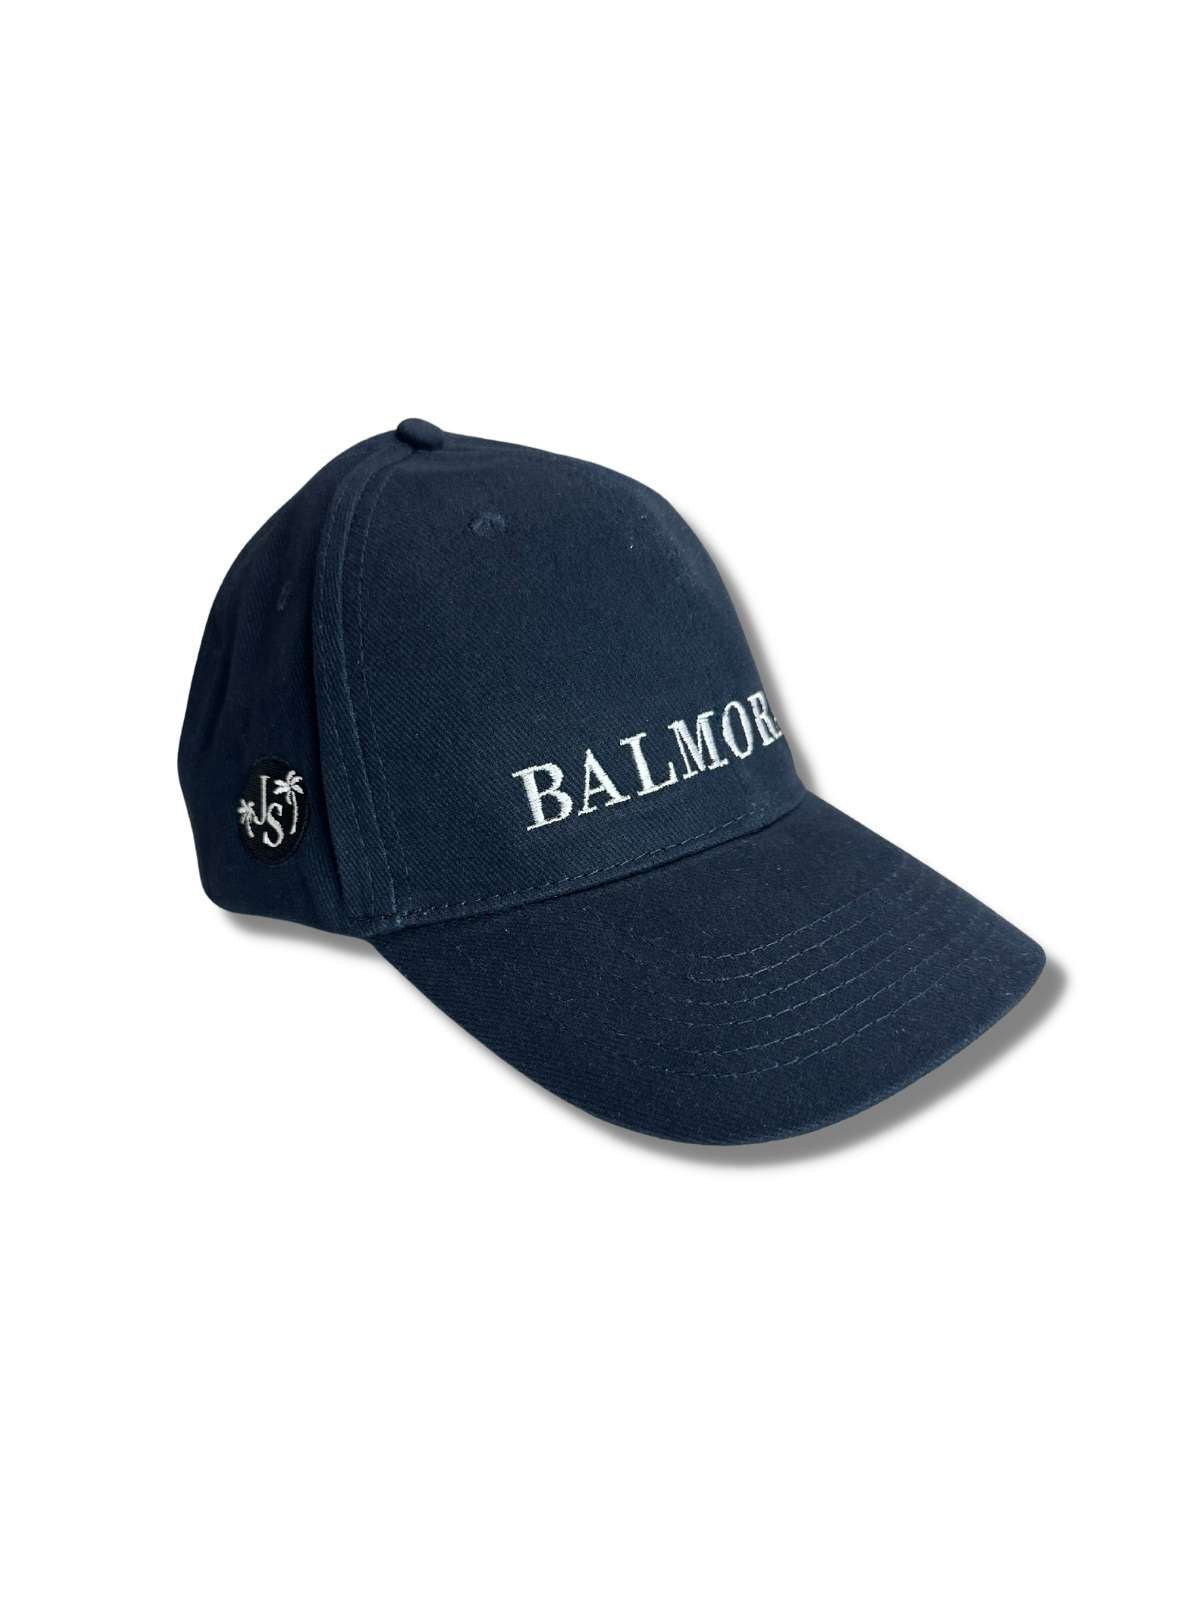 Balmoral Unisex Cotton Cap - Navy